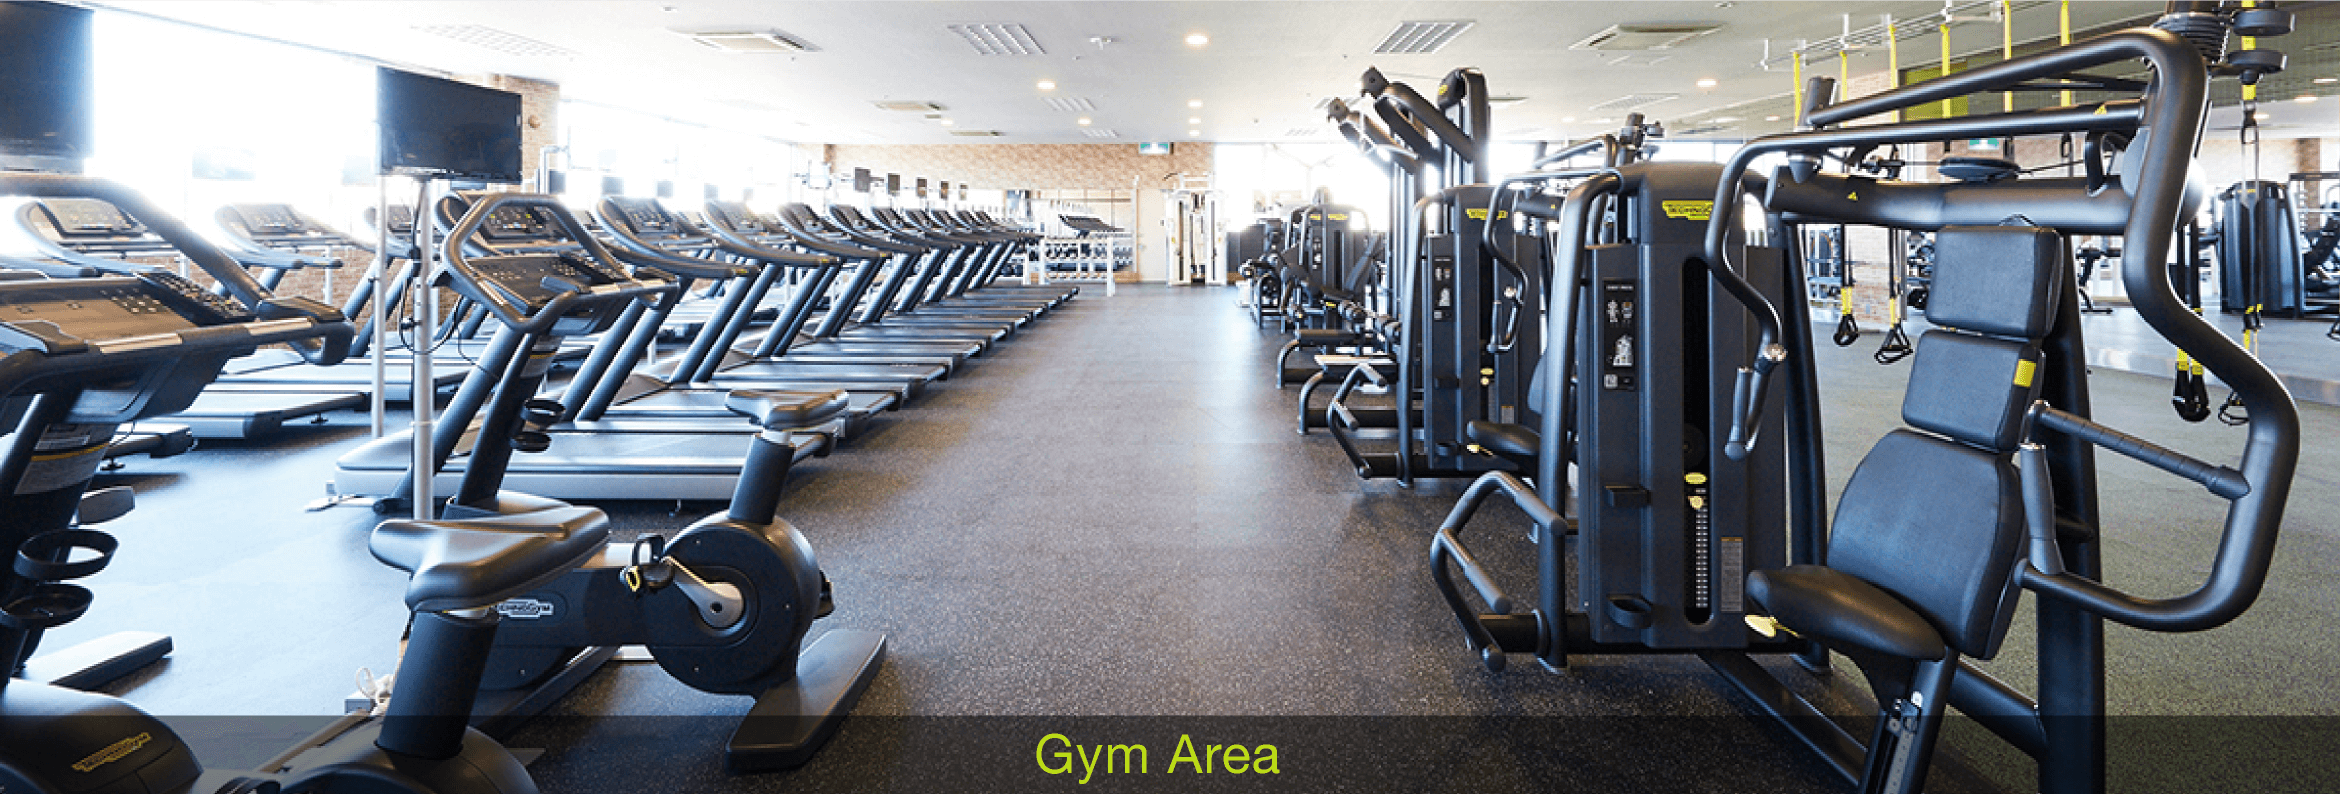 Gym Area